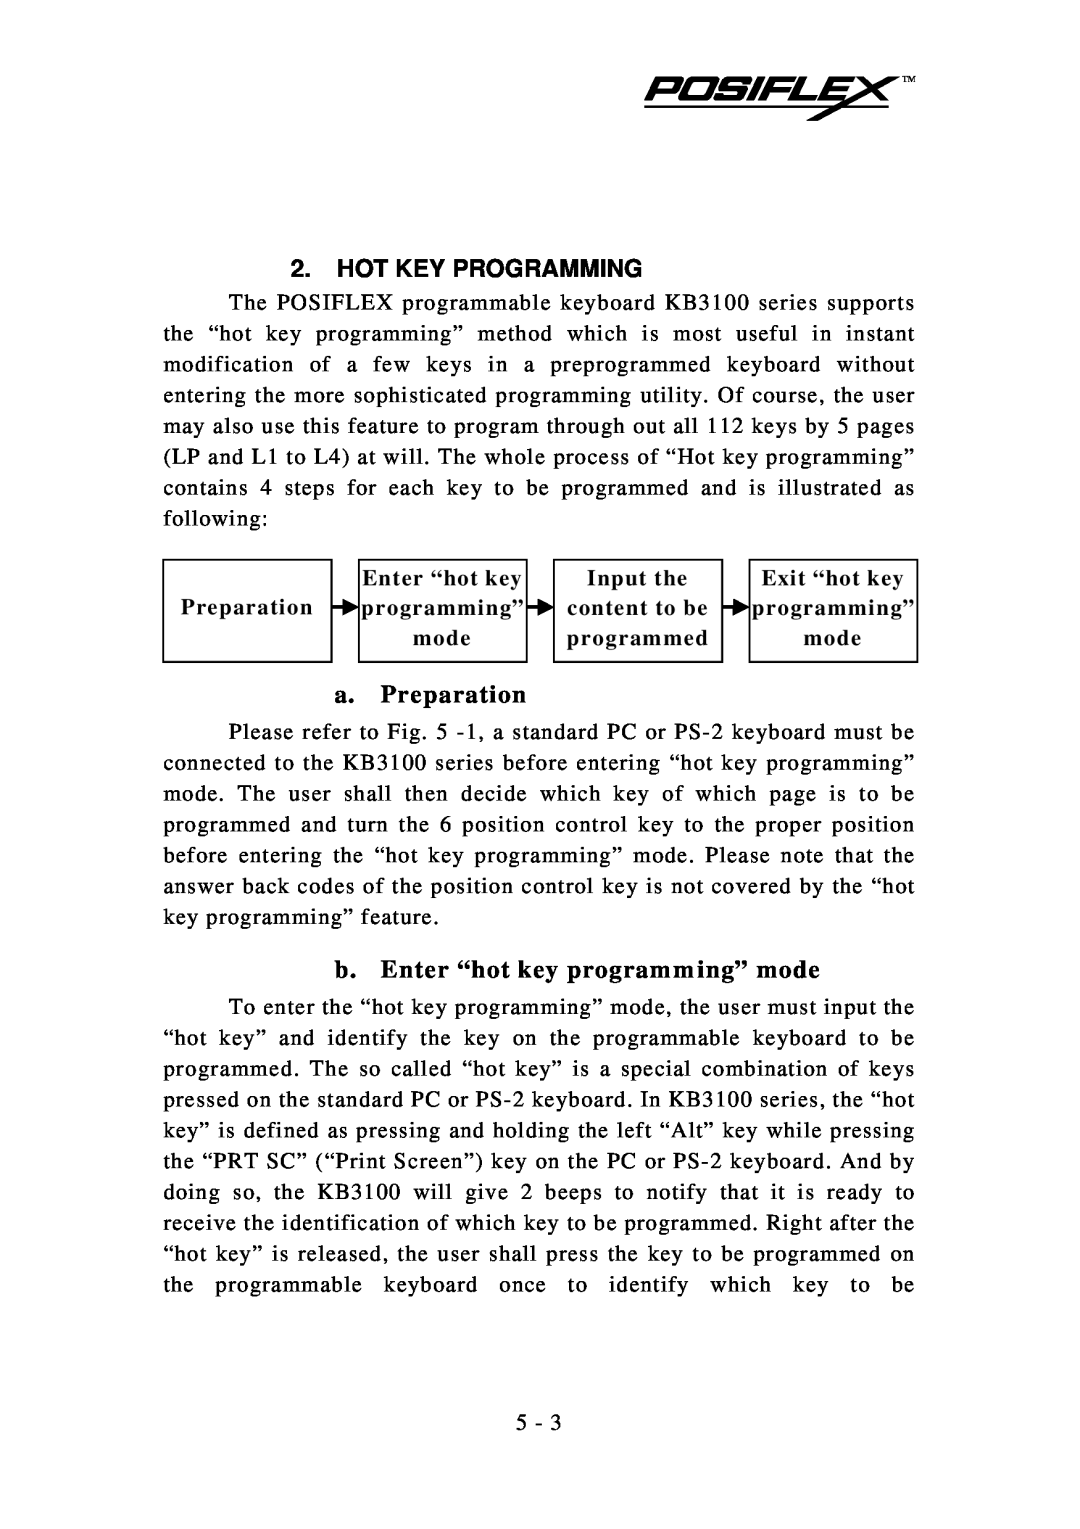 Mustek KB3100 user manual Hot Key Programming, a. Preparation, b. Enter “hot key program m ing” mode 